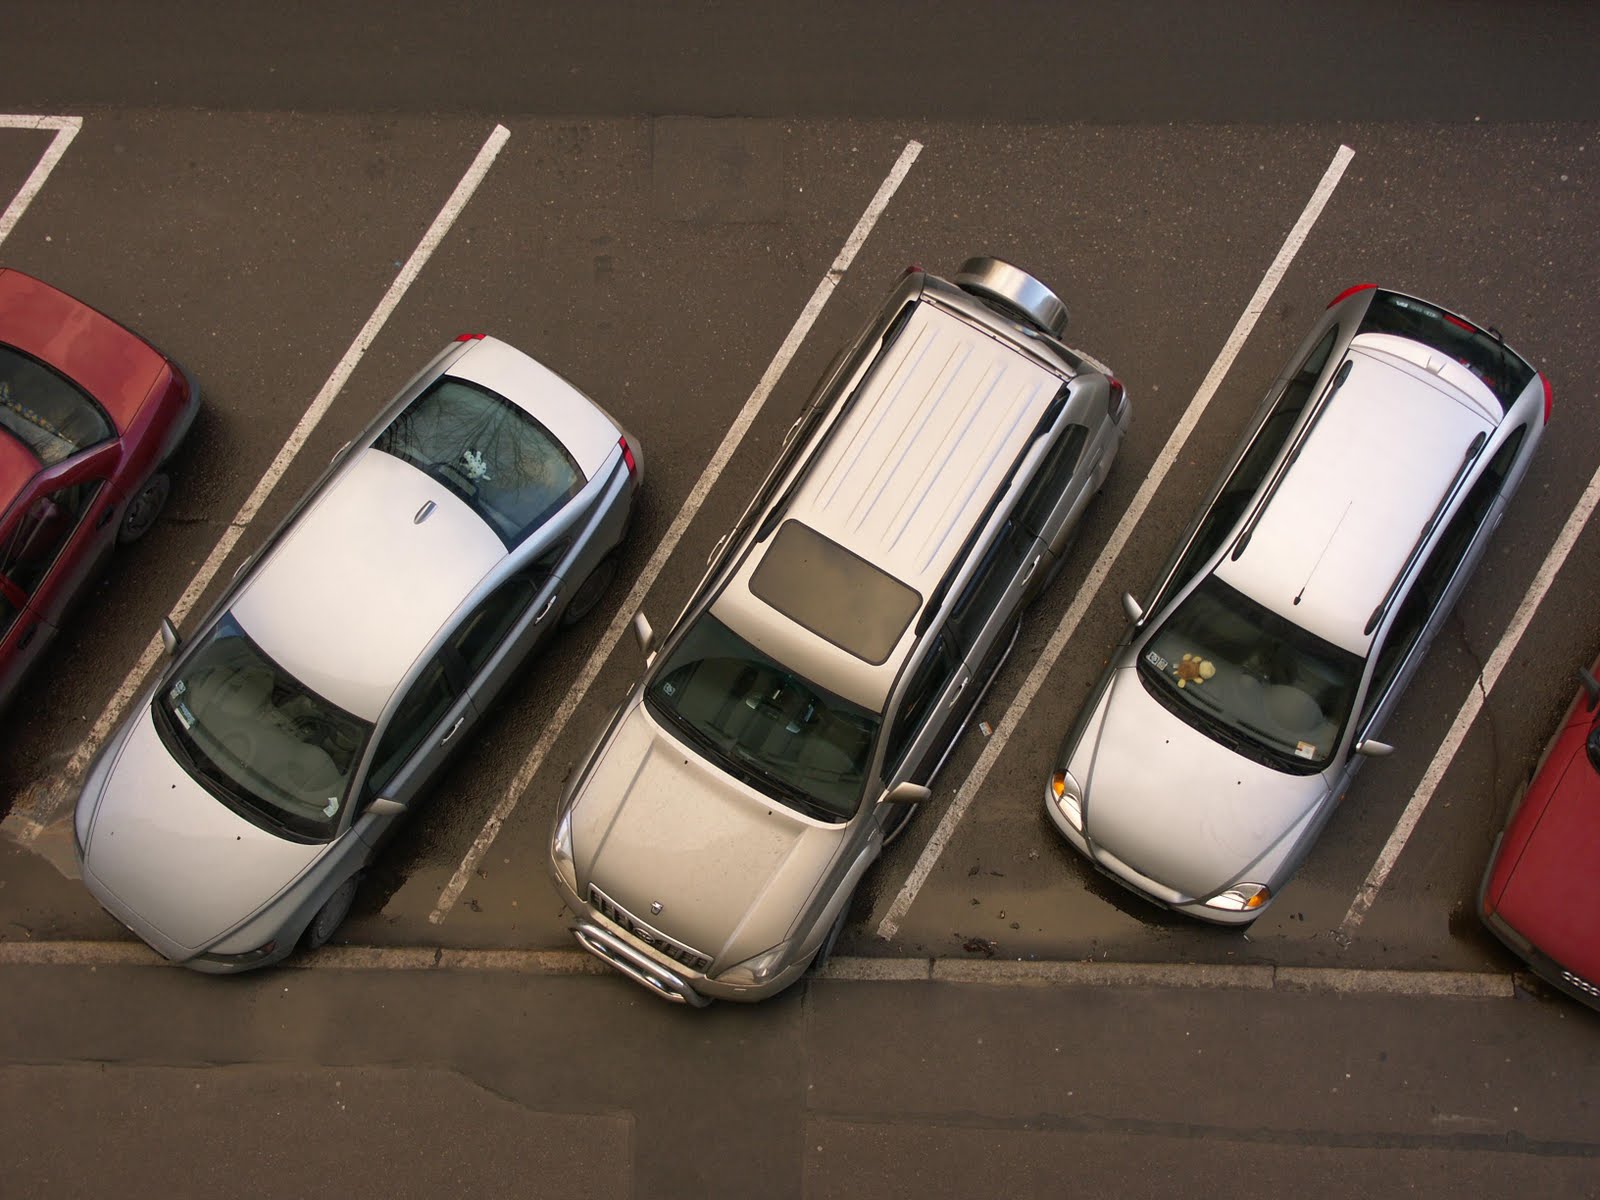 Projeto apucaranense que determina reserva de vagas em estacionamentos para gestantes é ampliado em nível estadual